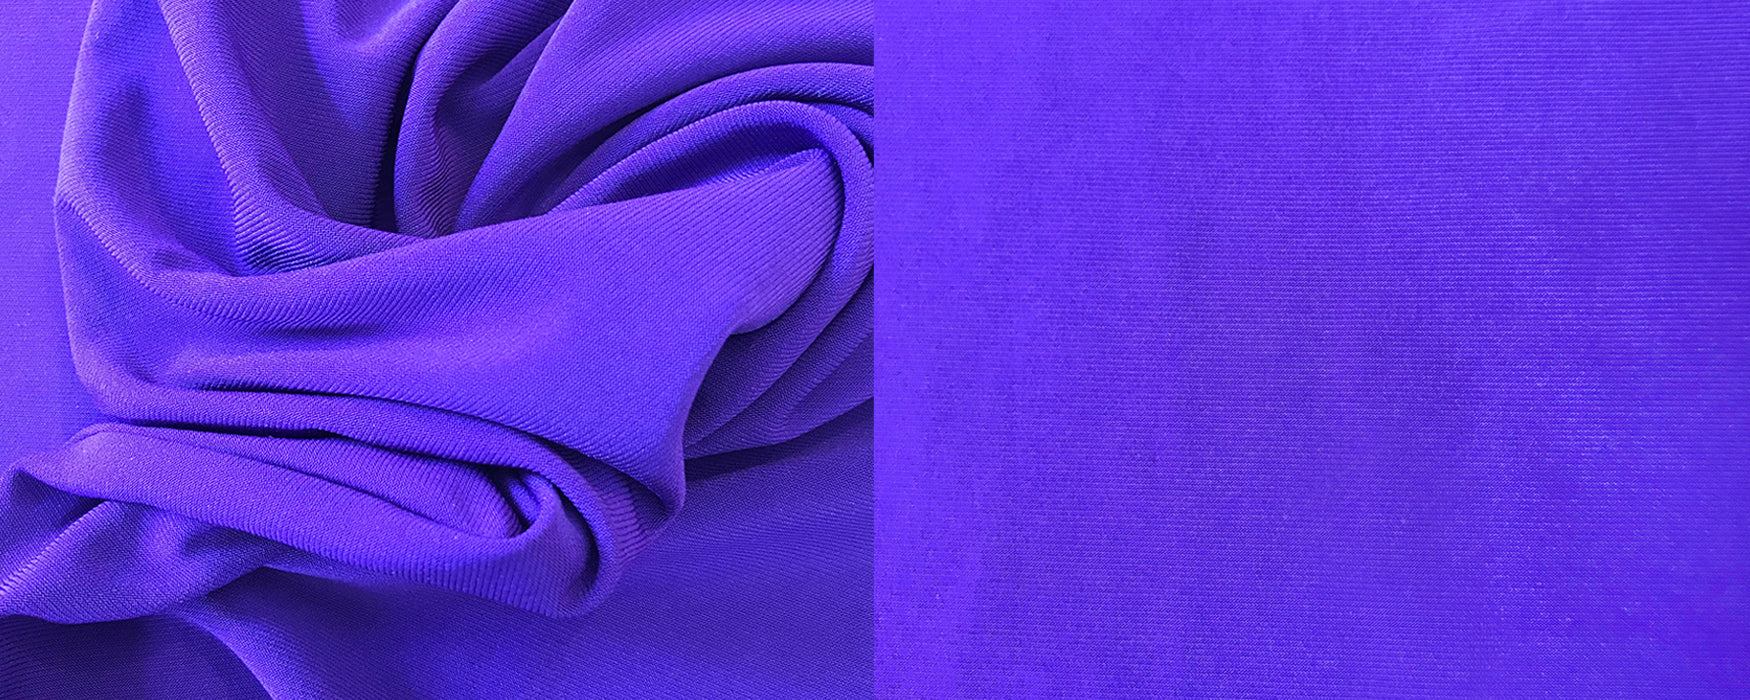 ROSARINI Fabric